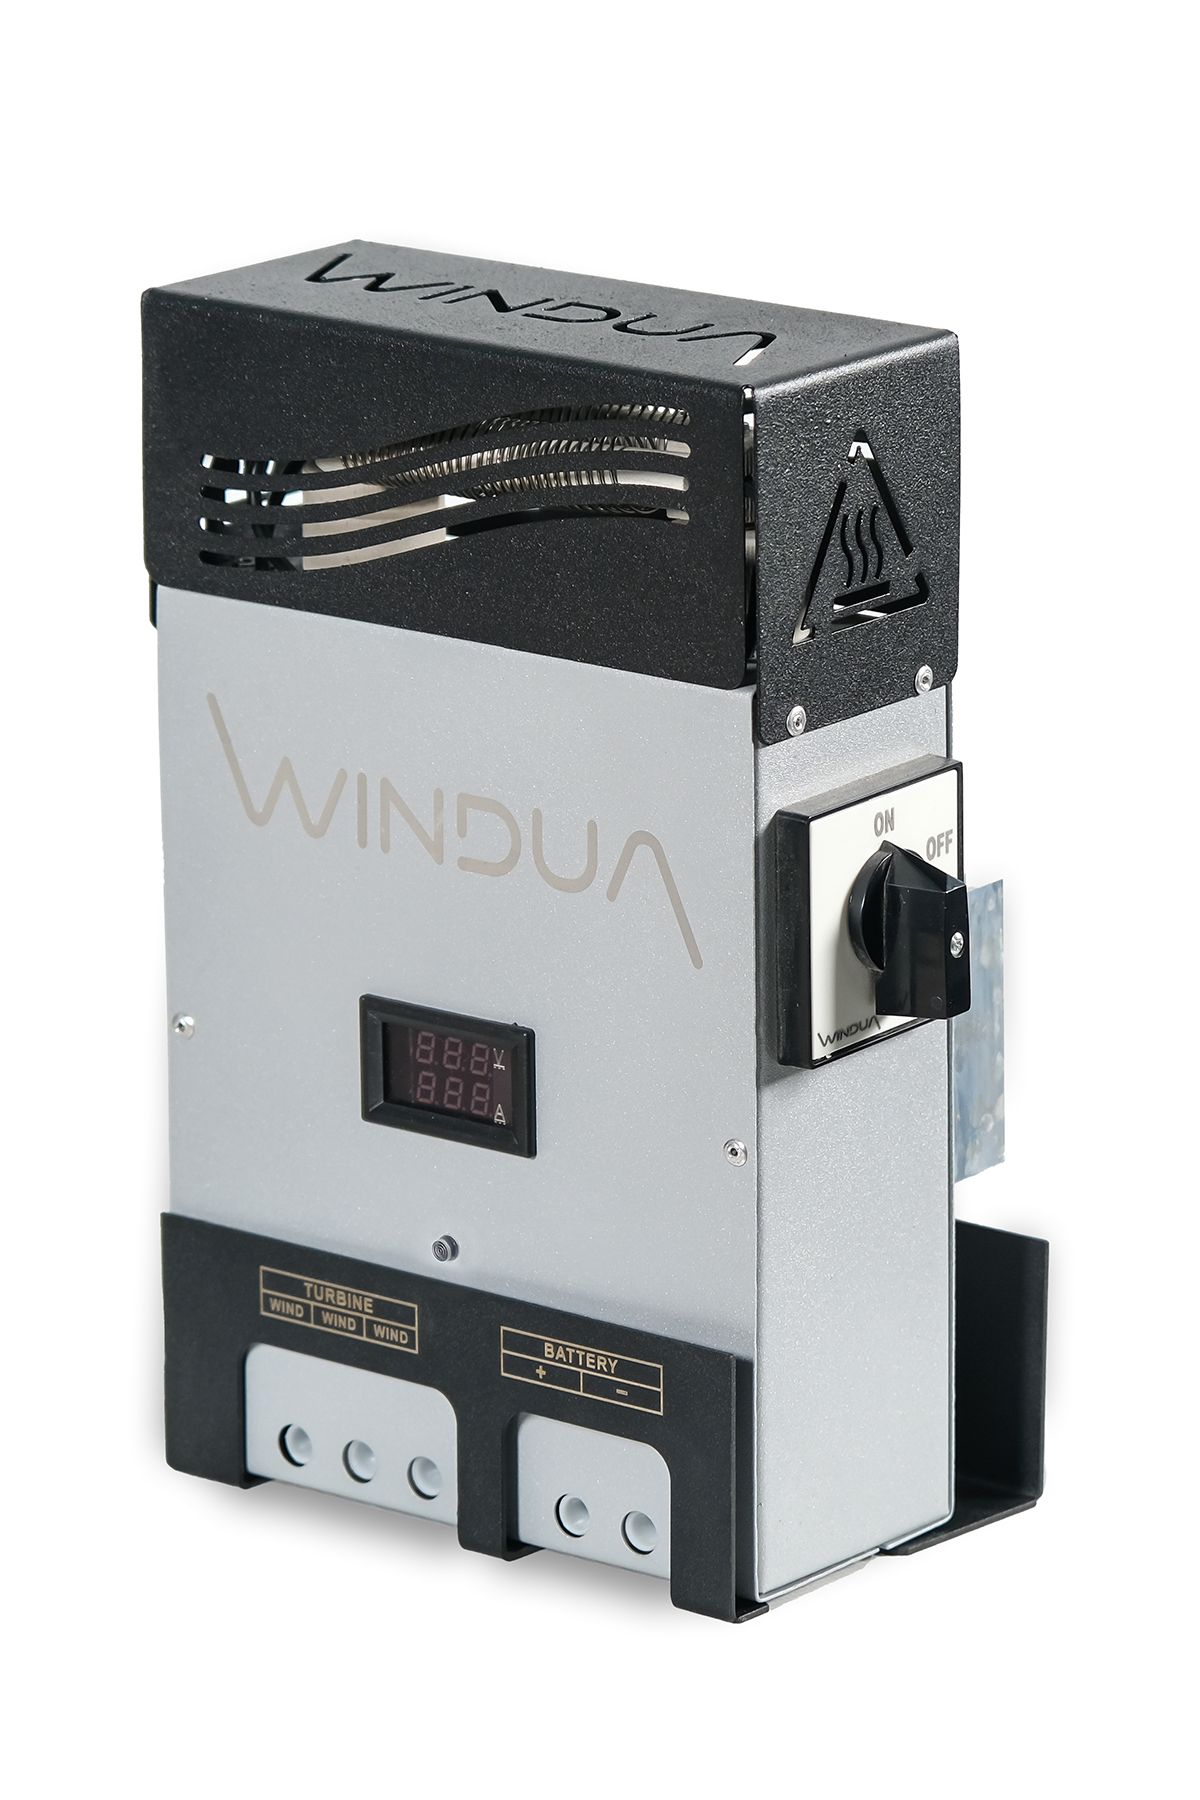 Windua Rüzgar Türbini Şarj Kontrol Cihazı 12 V - 0-4000 Watt Güç Aralığı